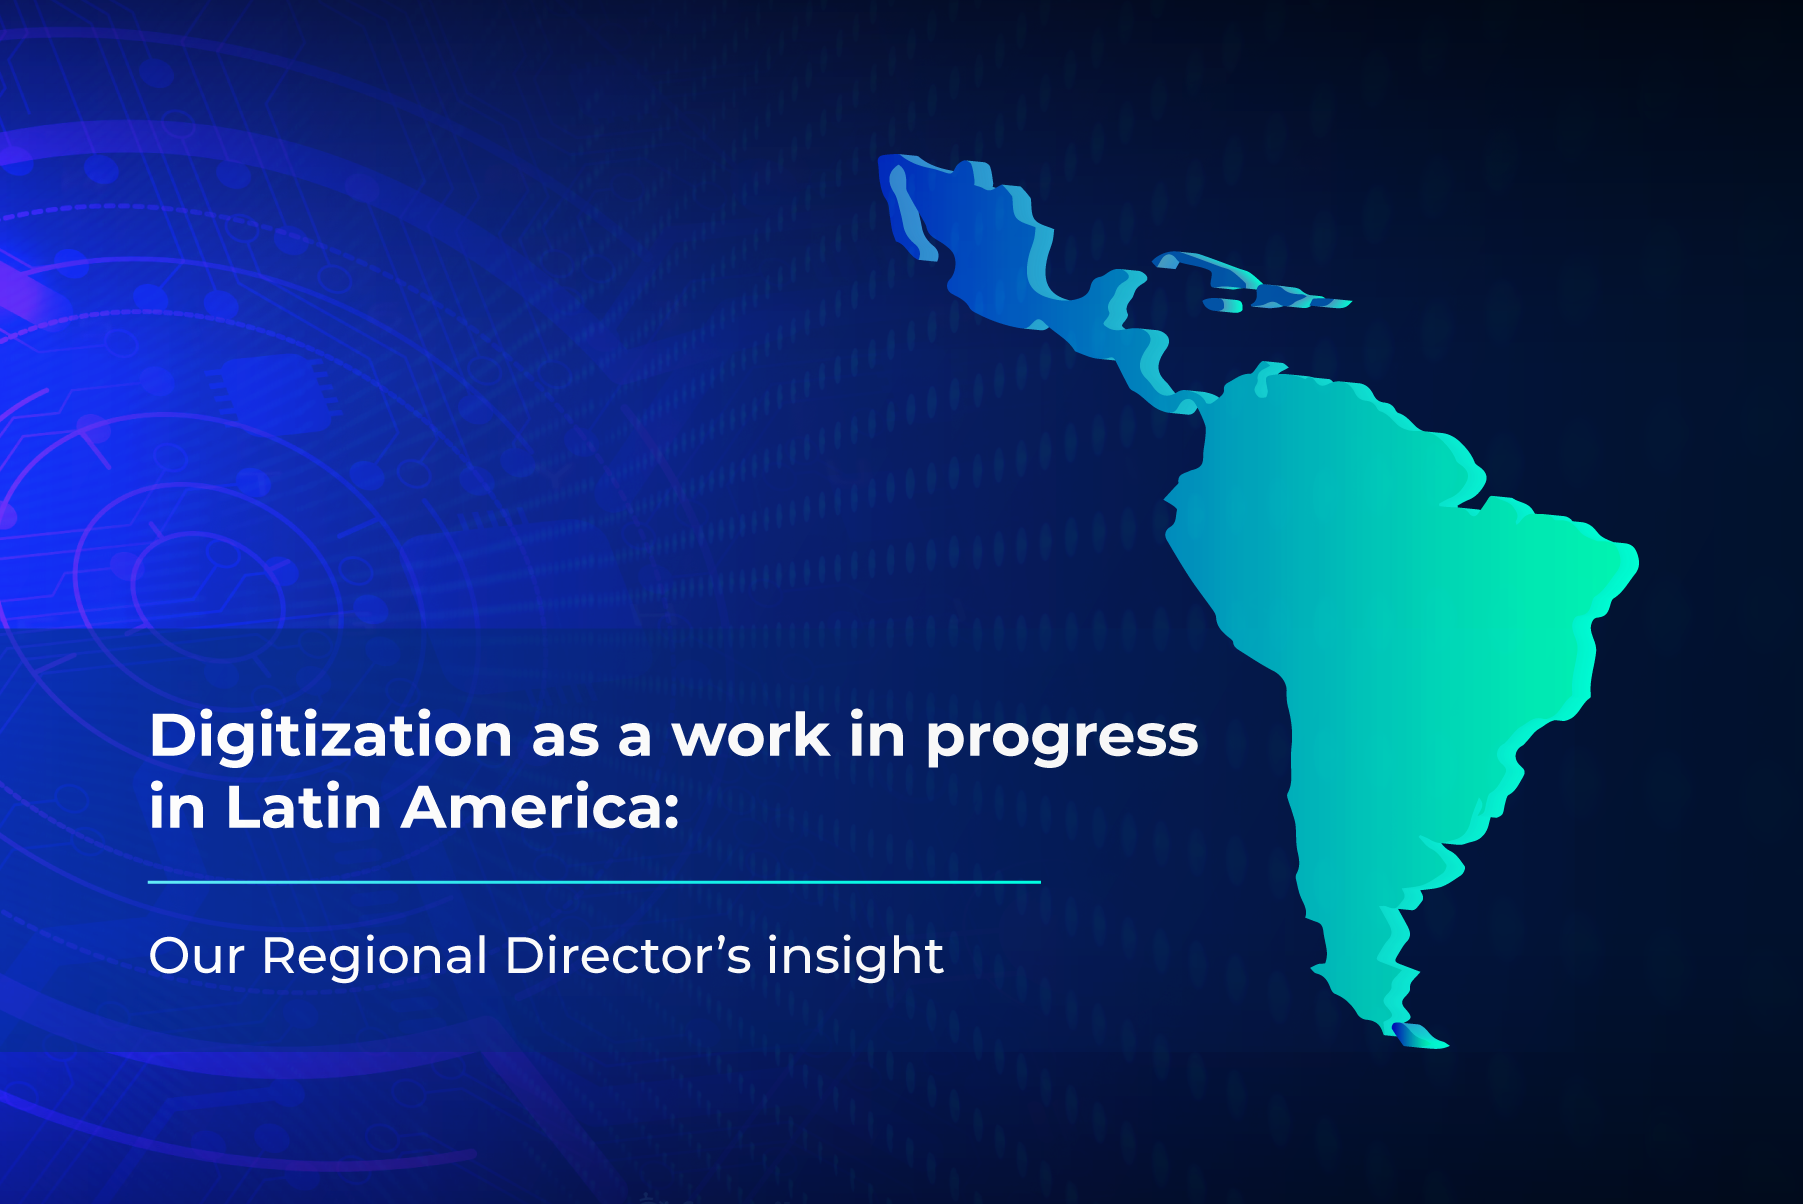 Digitization in Latin America